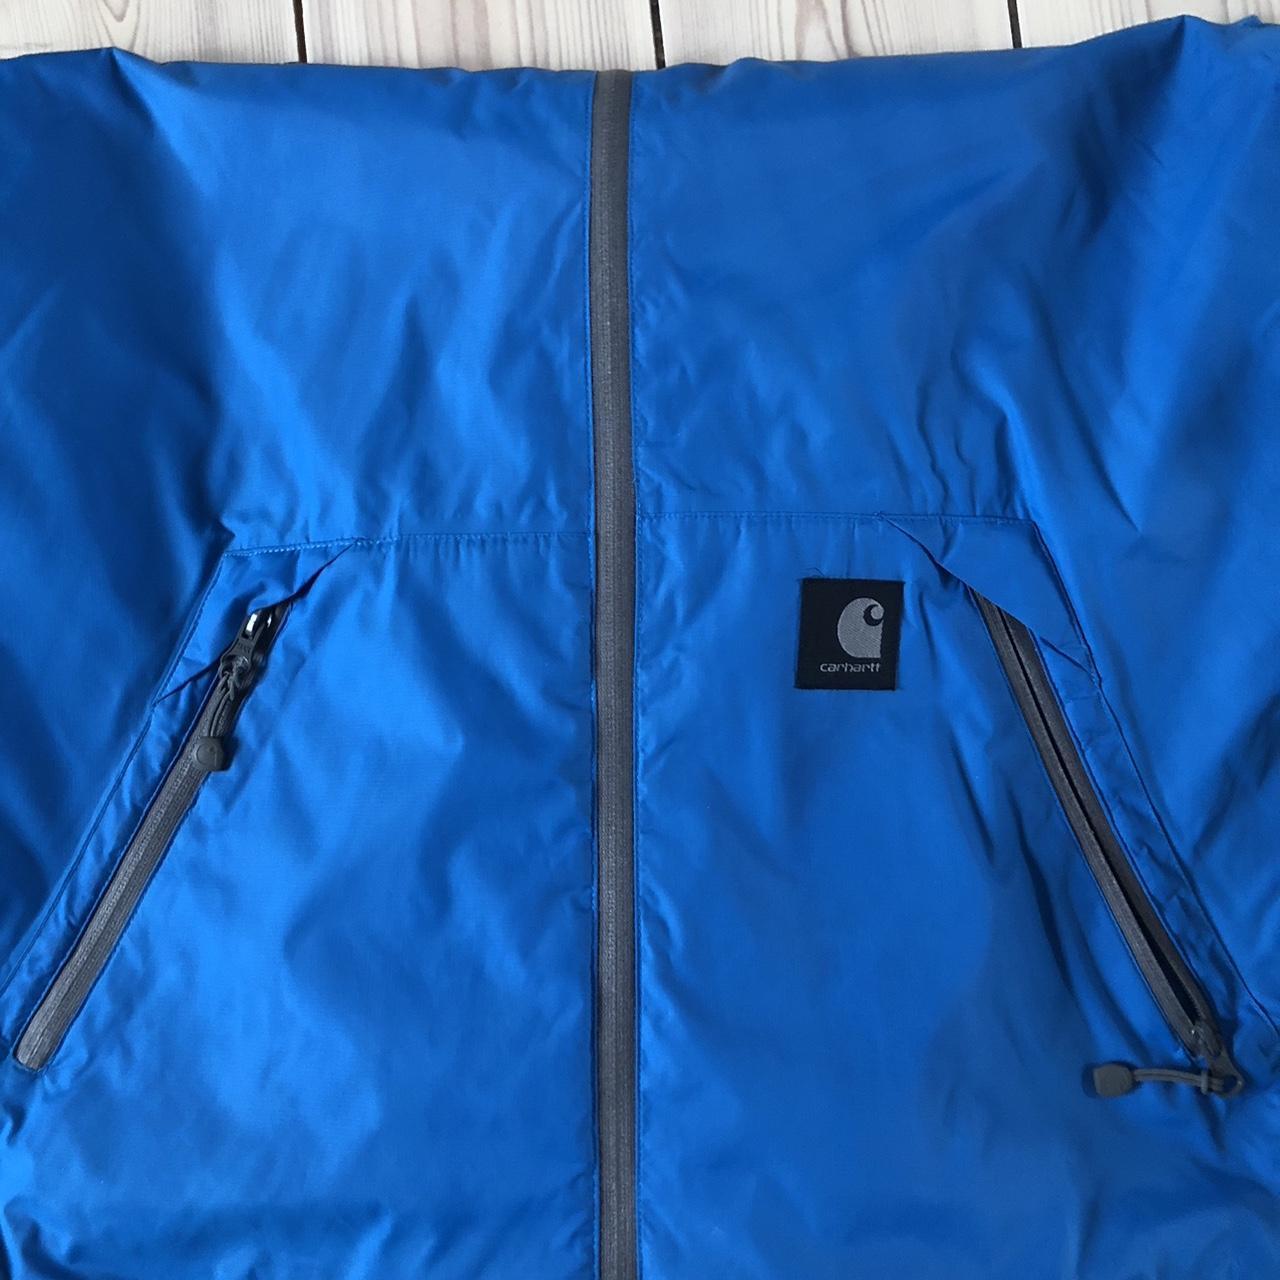 Carhartt jacket zip-up Used - excellent condition... - Depop